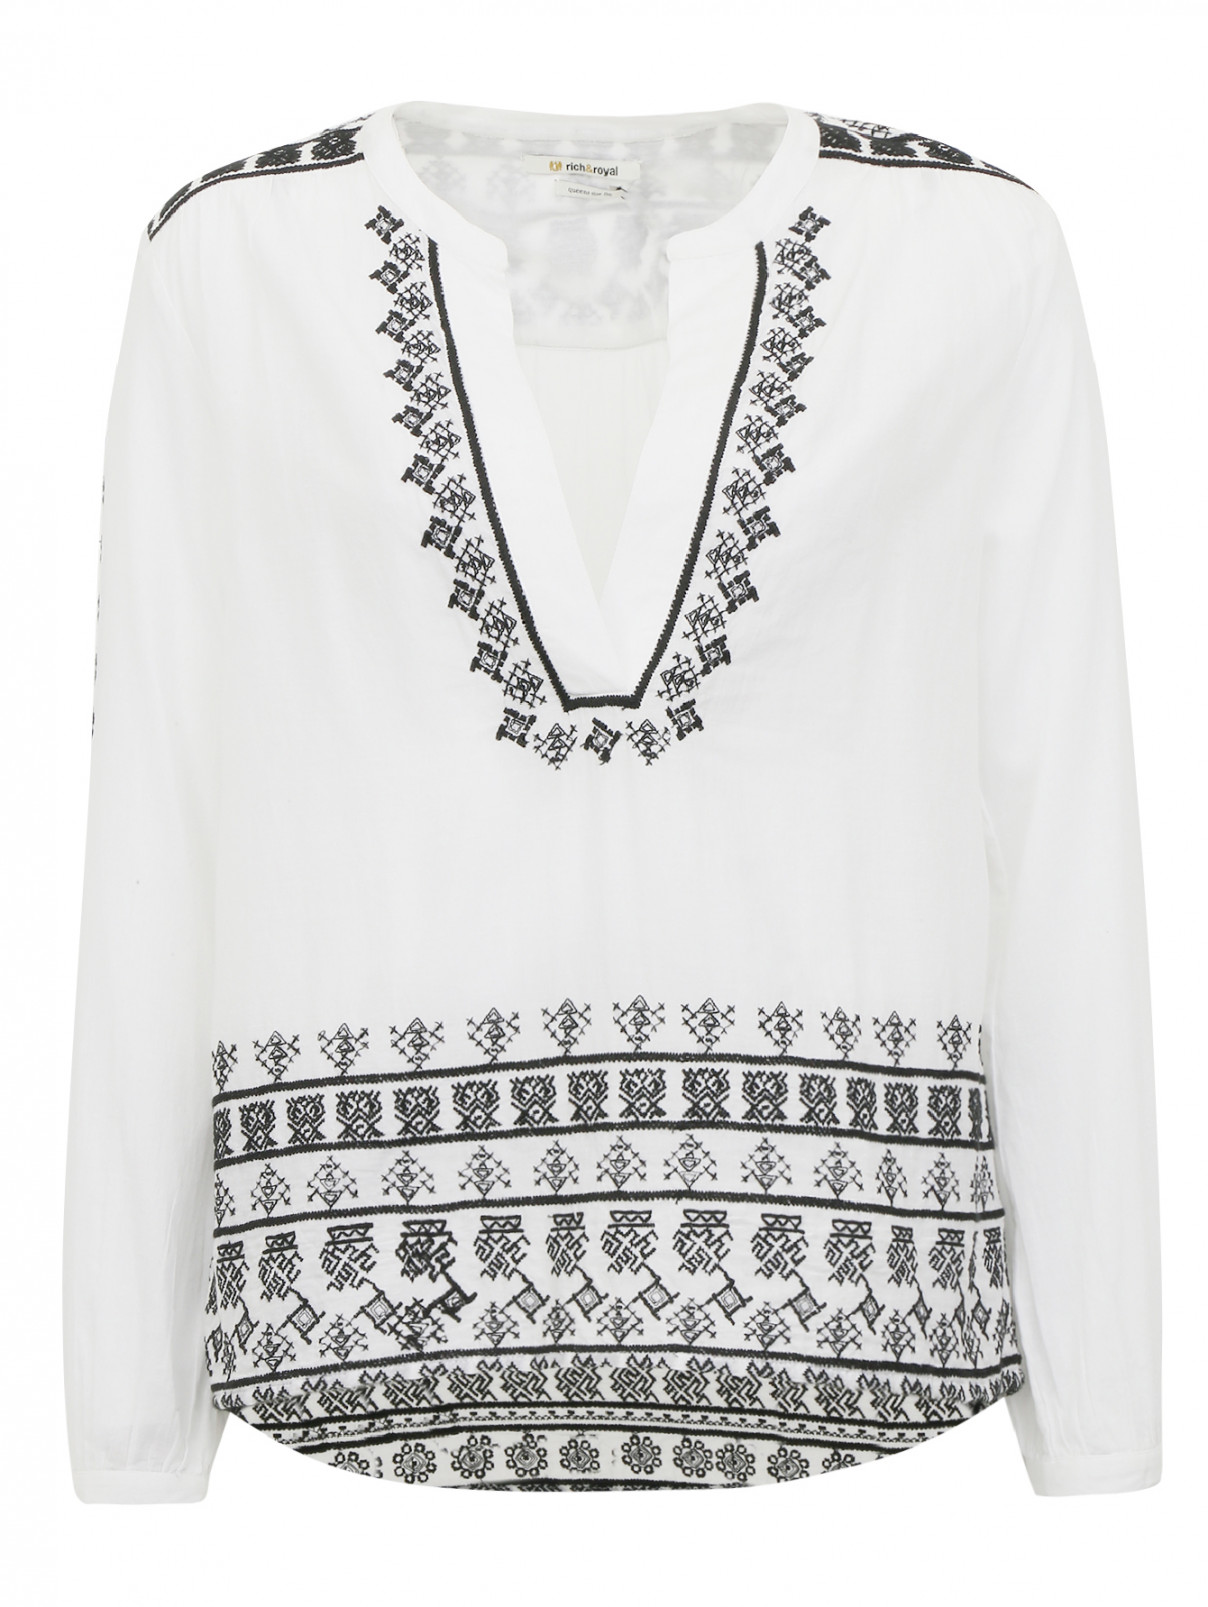 Рубашка из хлопка декорированная вышивкой Rich&Royal  –  Общий вид  – Цвет:  Белый